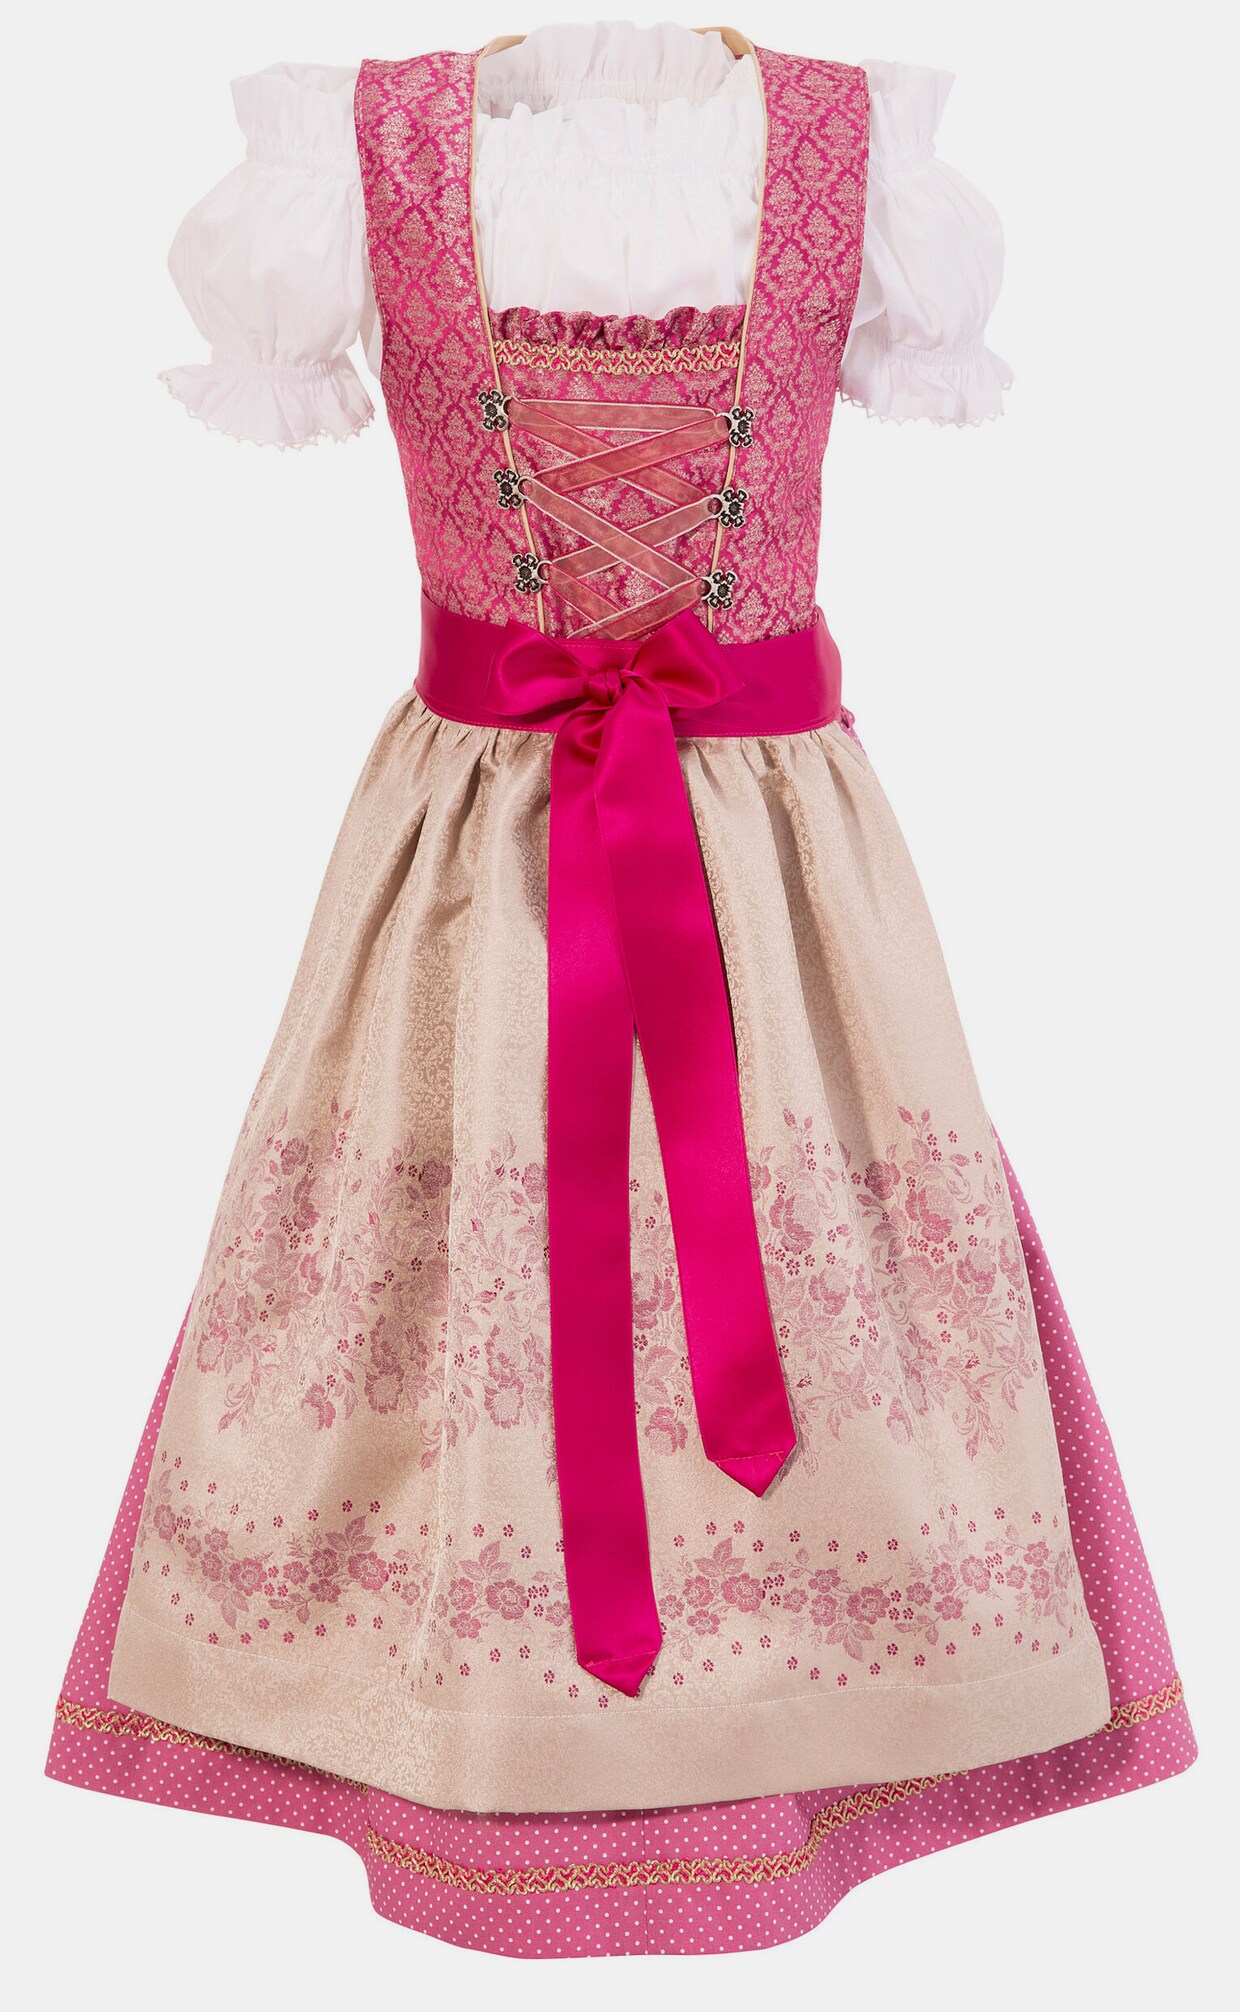 Isar-Trachten Jurk in klederdracht - roze